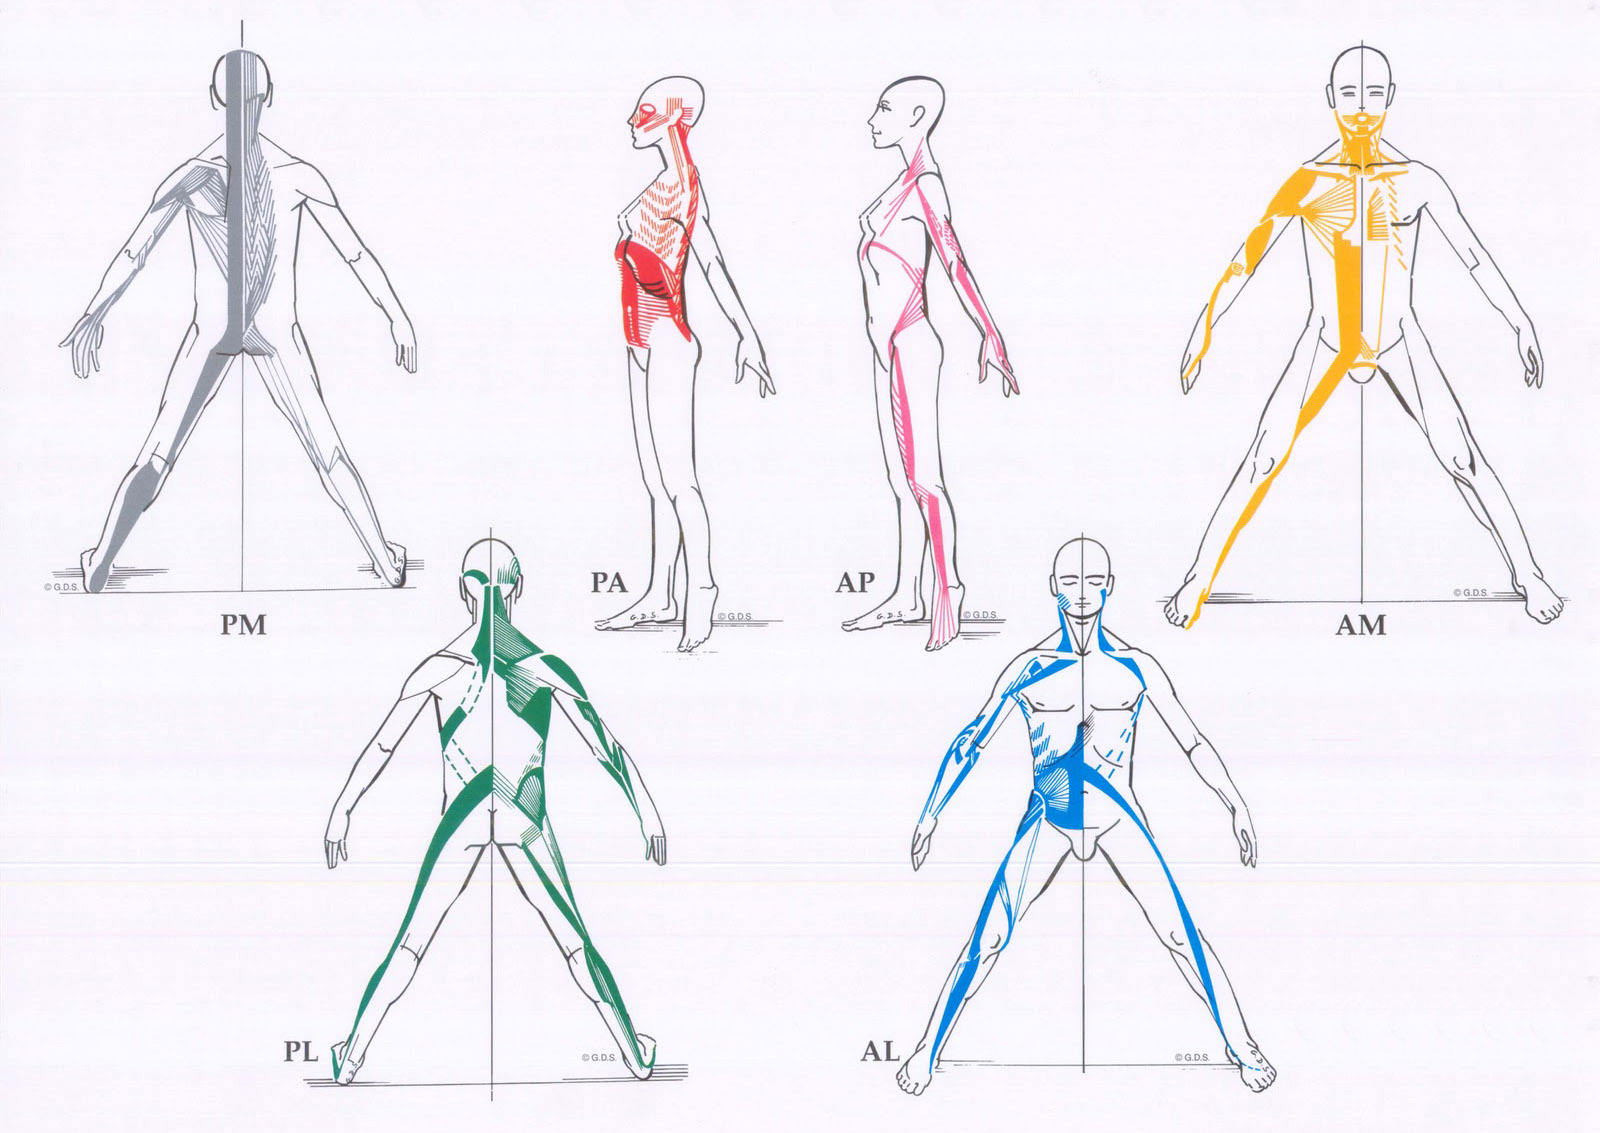 seis dibujos esquemáticos explicativos de las distintas cadenas musculares descritas